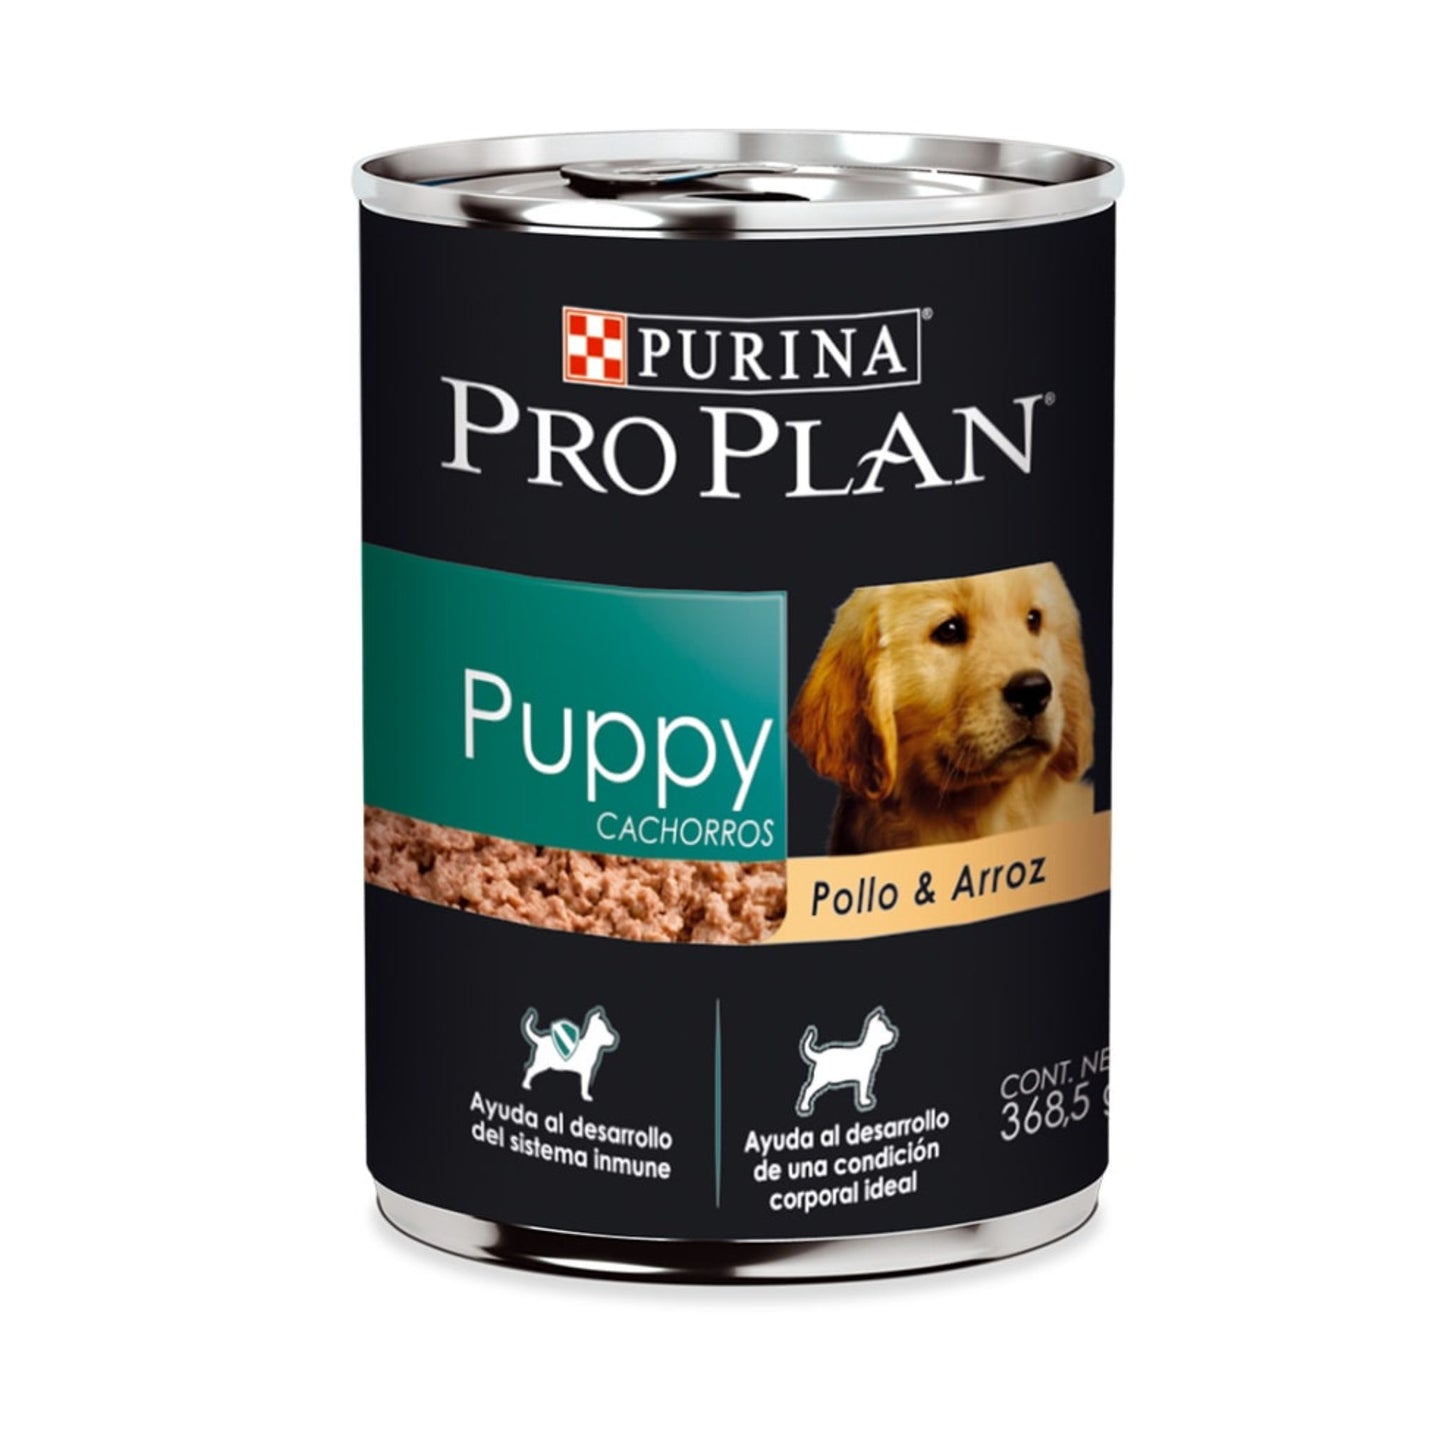 Purina PRO PLAN Puppy Pollo y Arroz 368 g